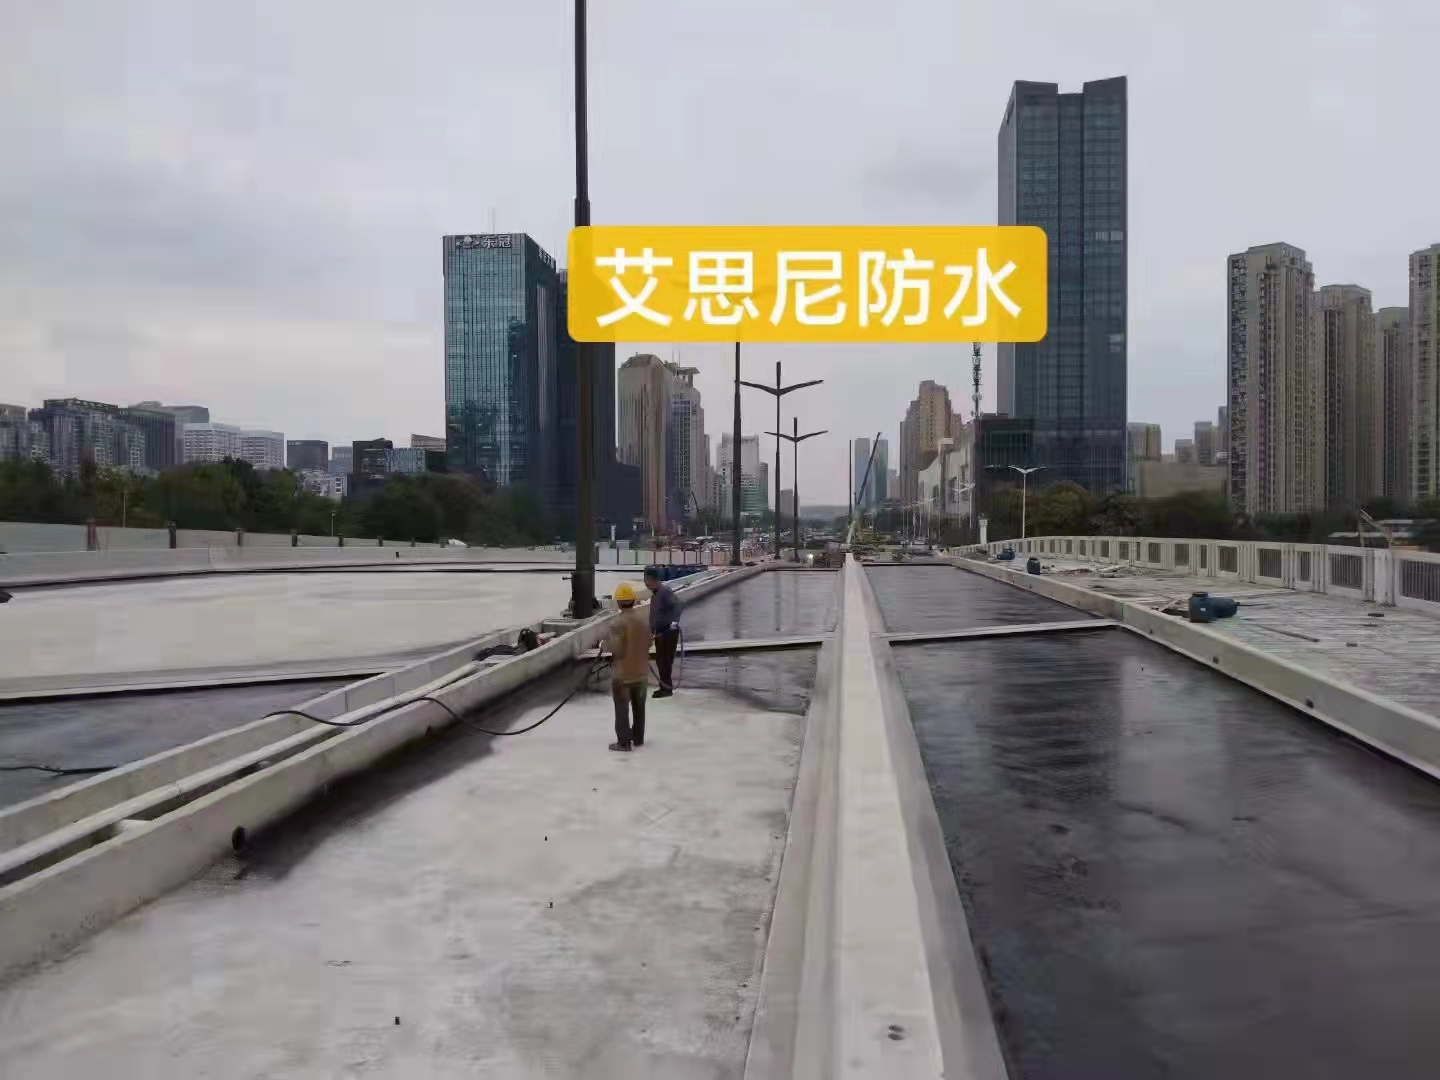 艾思尼防水 聚合物改性沥青防水涂料 南京沥青粘结剂桥面防水涂料供应